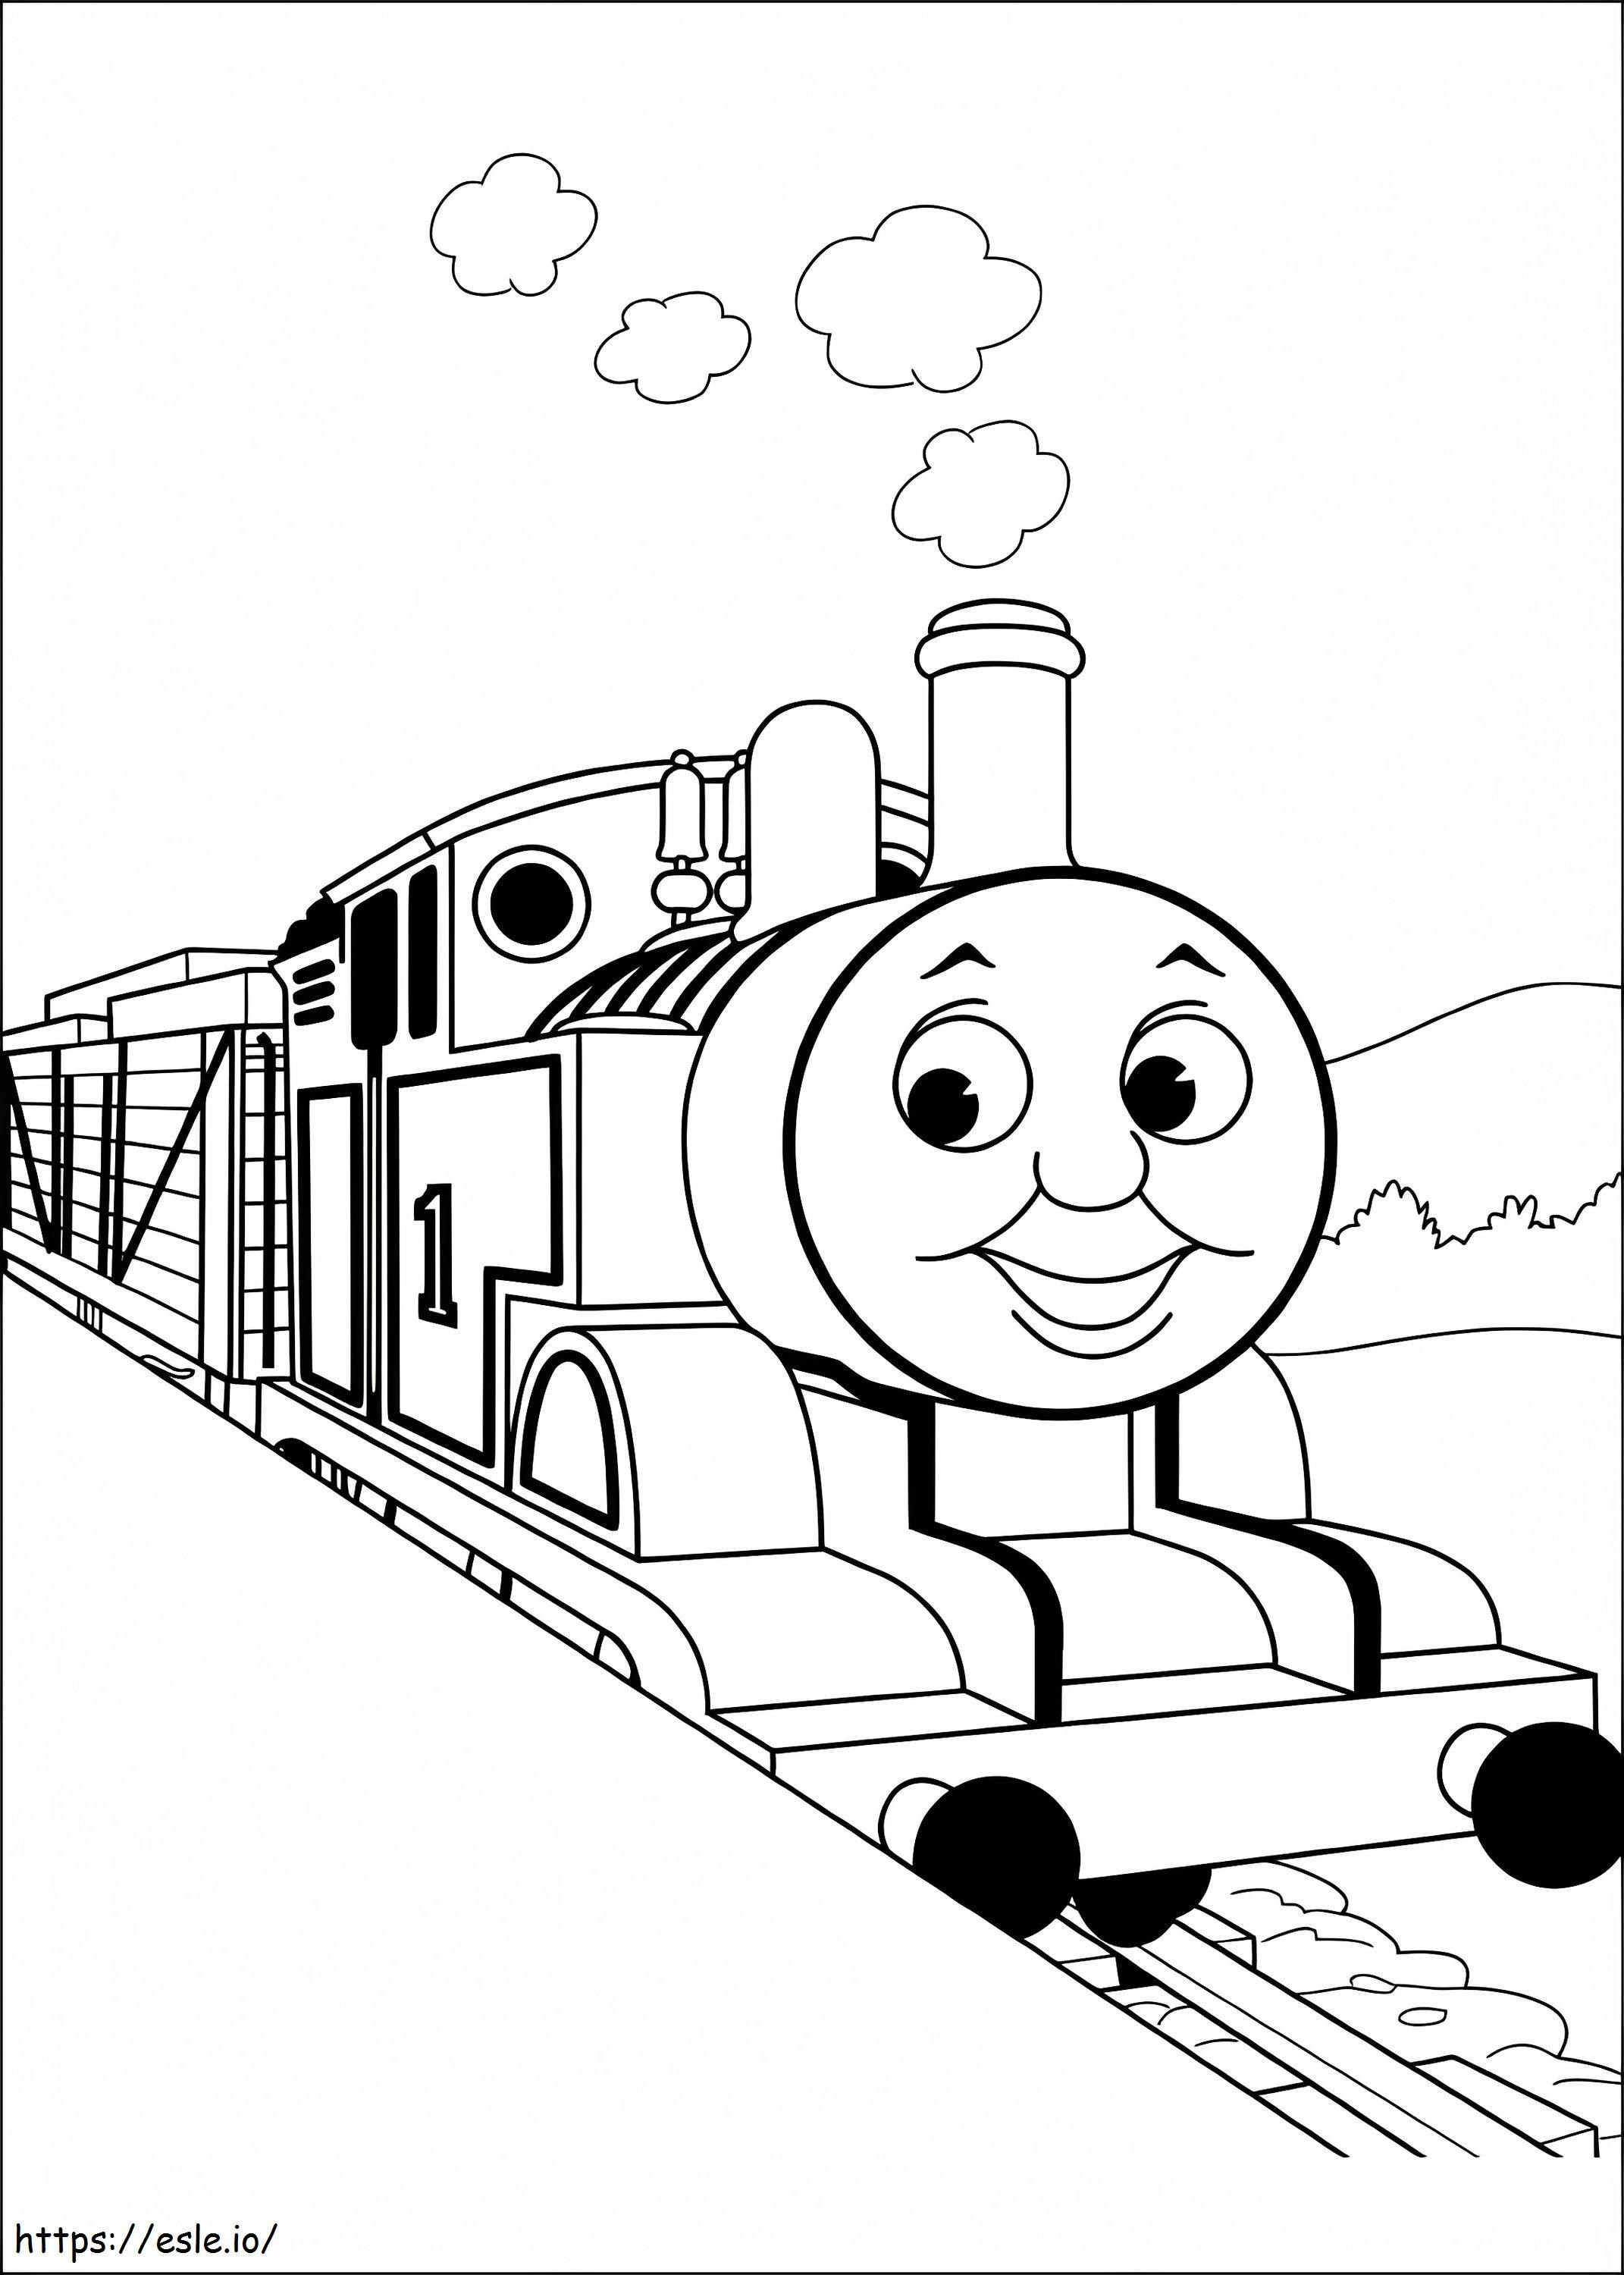 Dibujo para colorear de Thomas el tren feliz para colorear